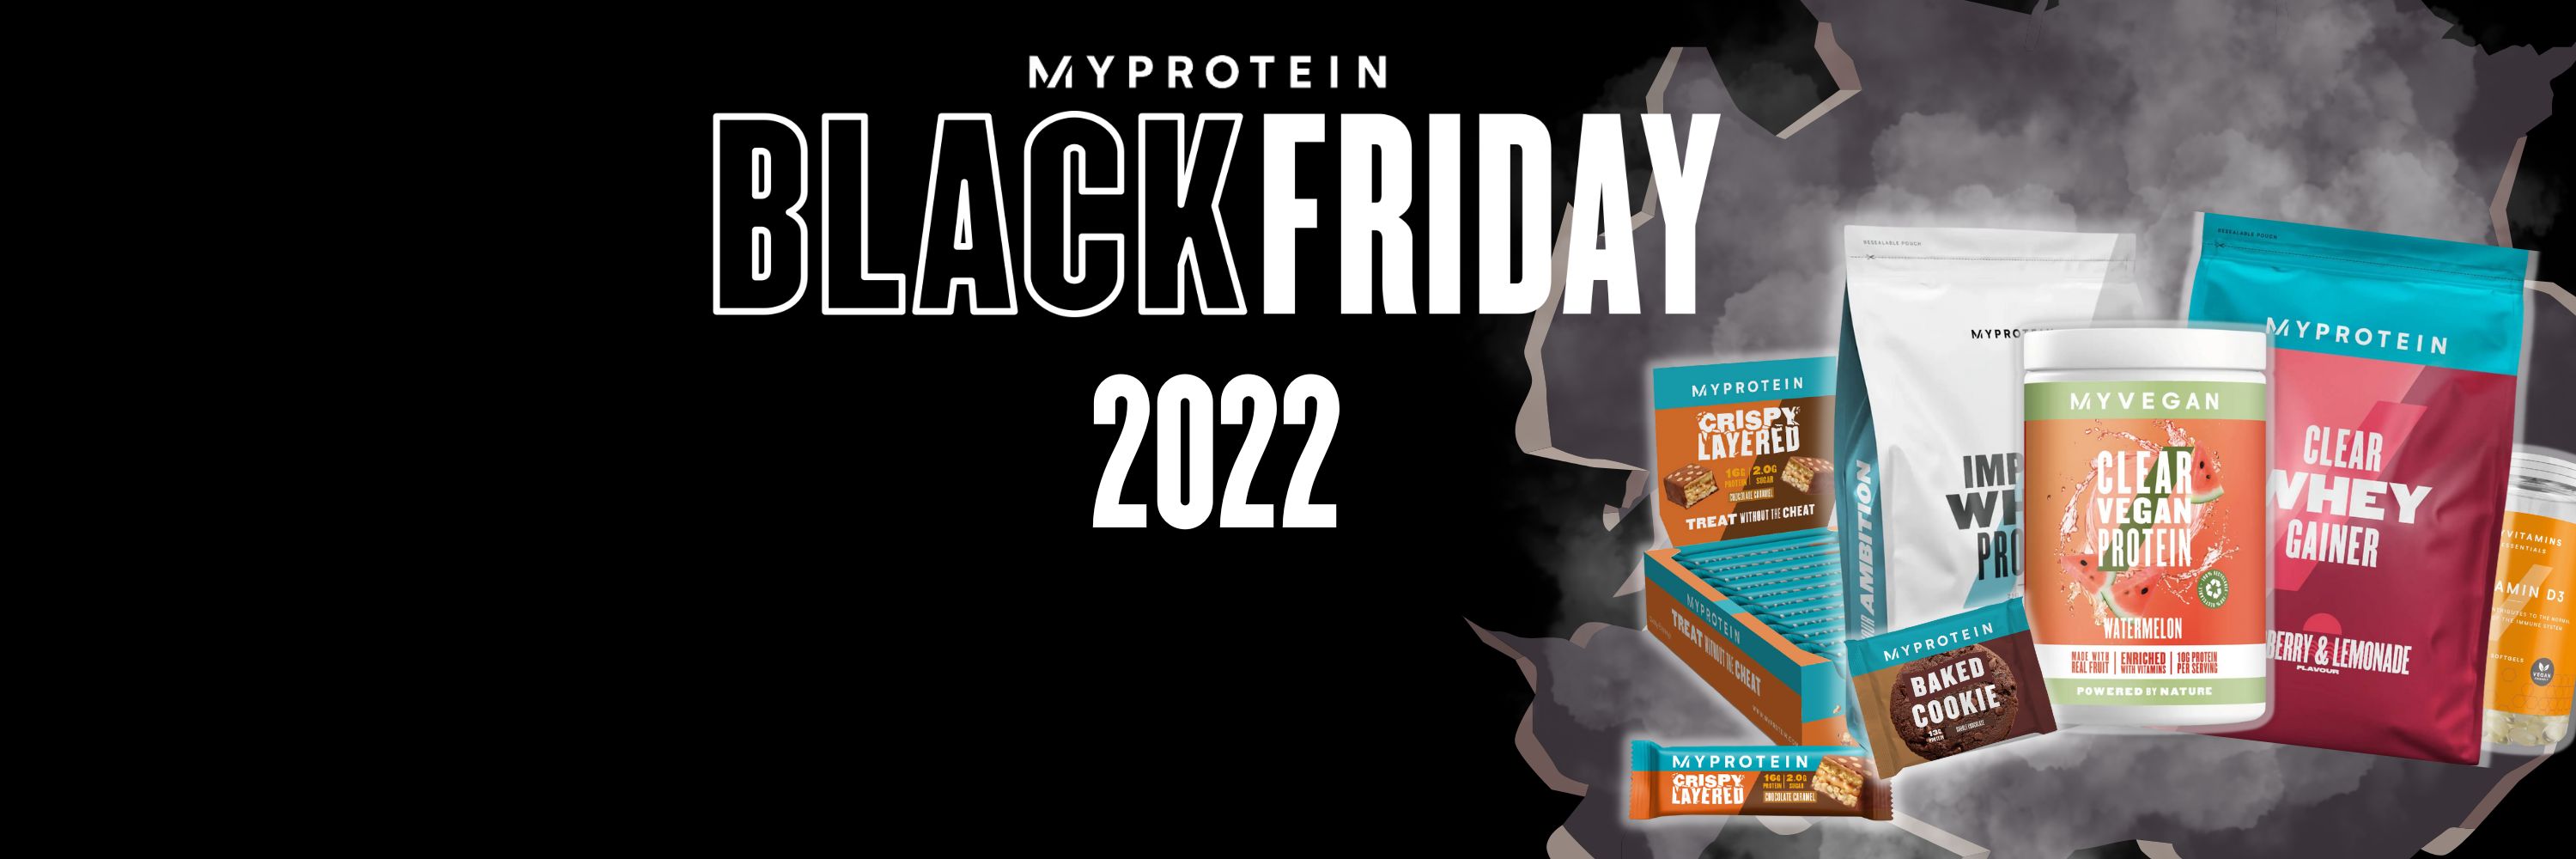 Black Friday Myprotein